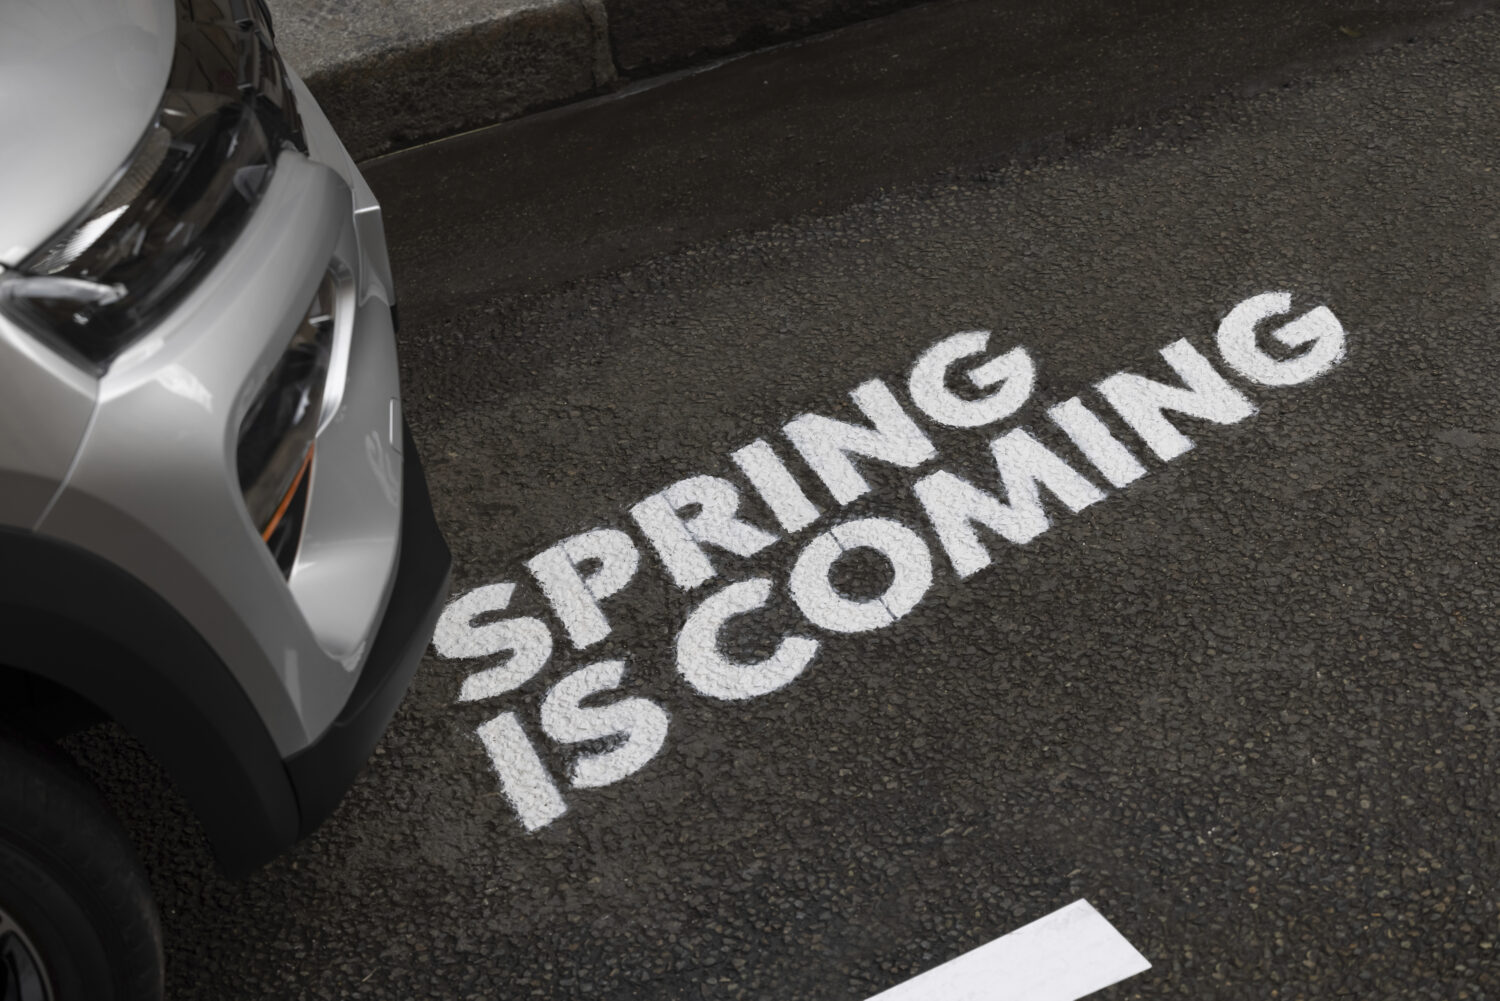 2021 - Spring is coming - Teaser.jpg